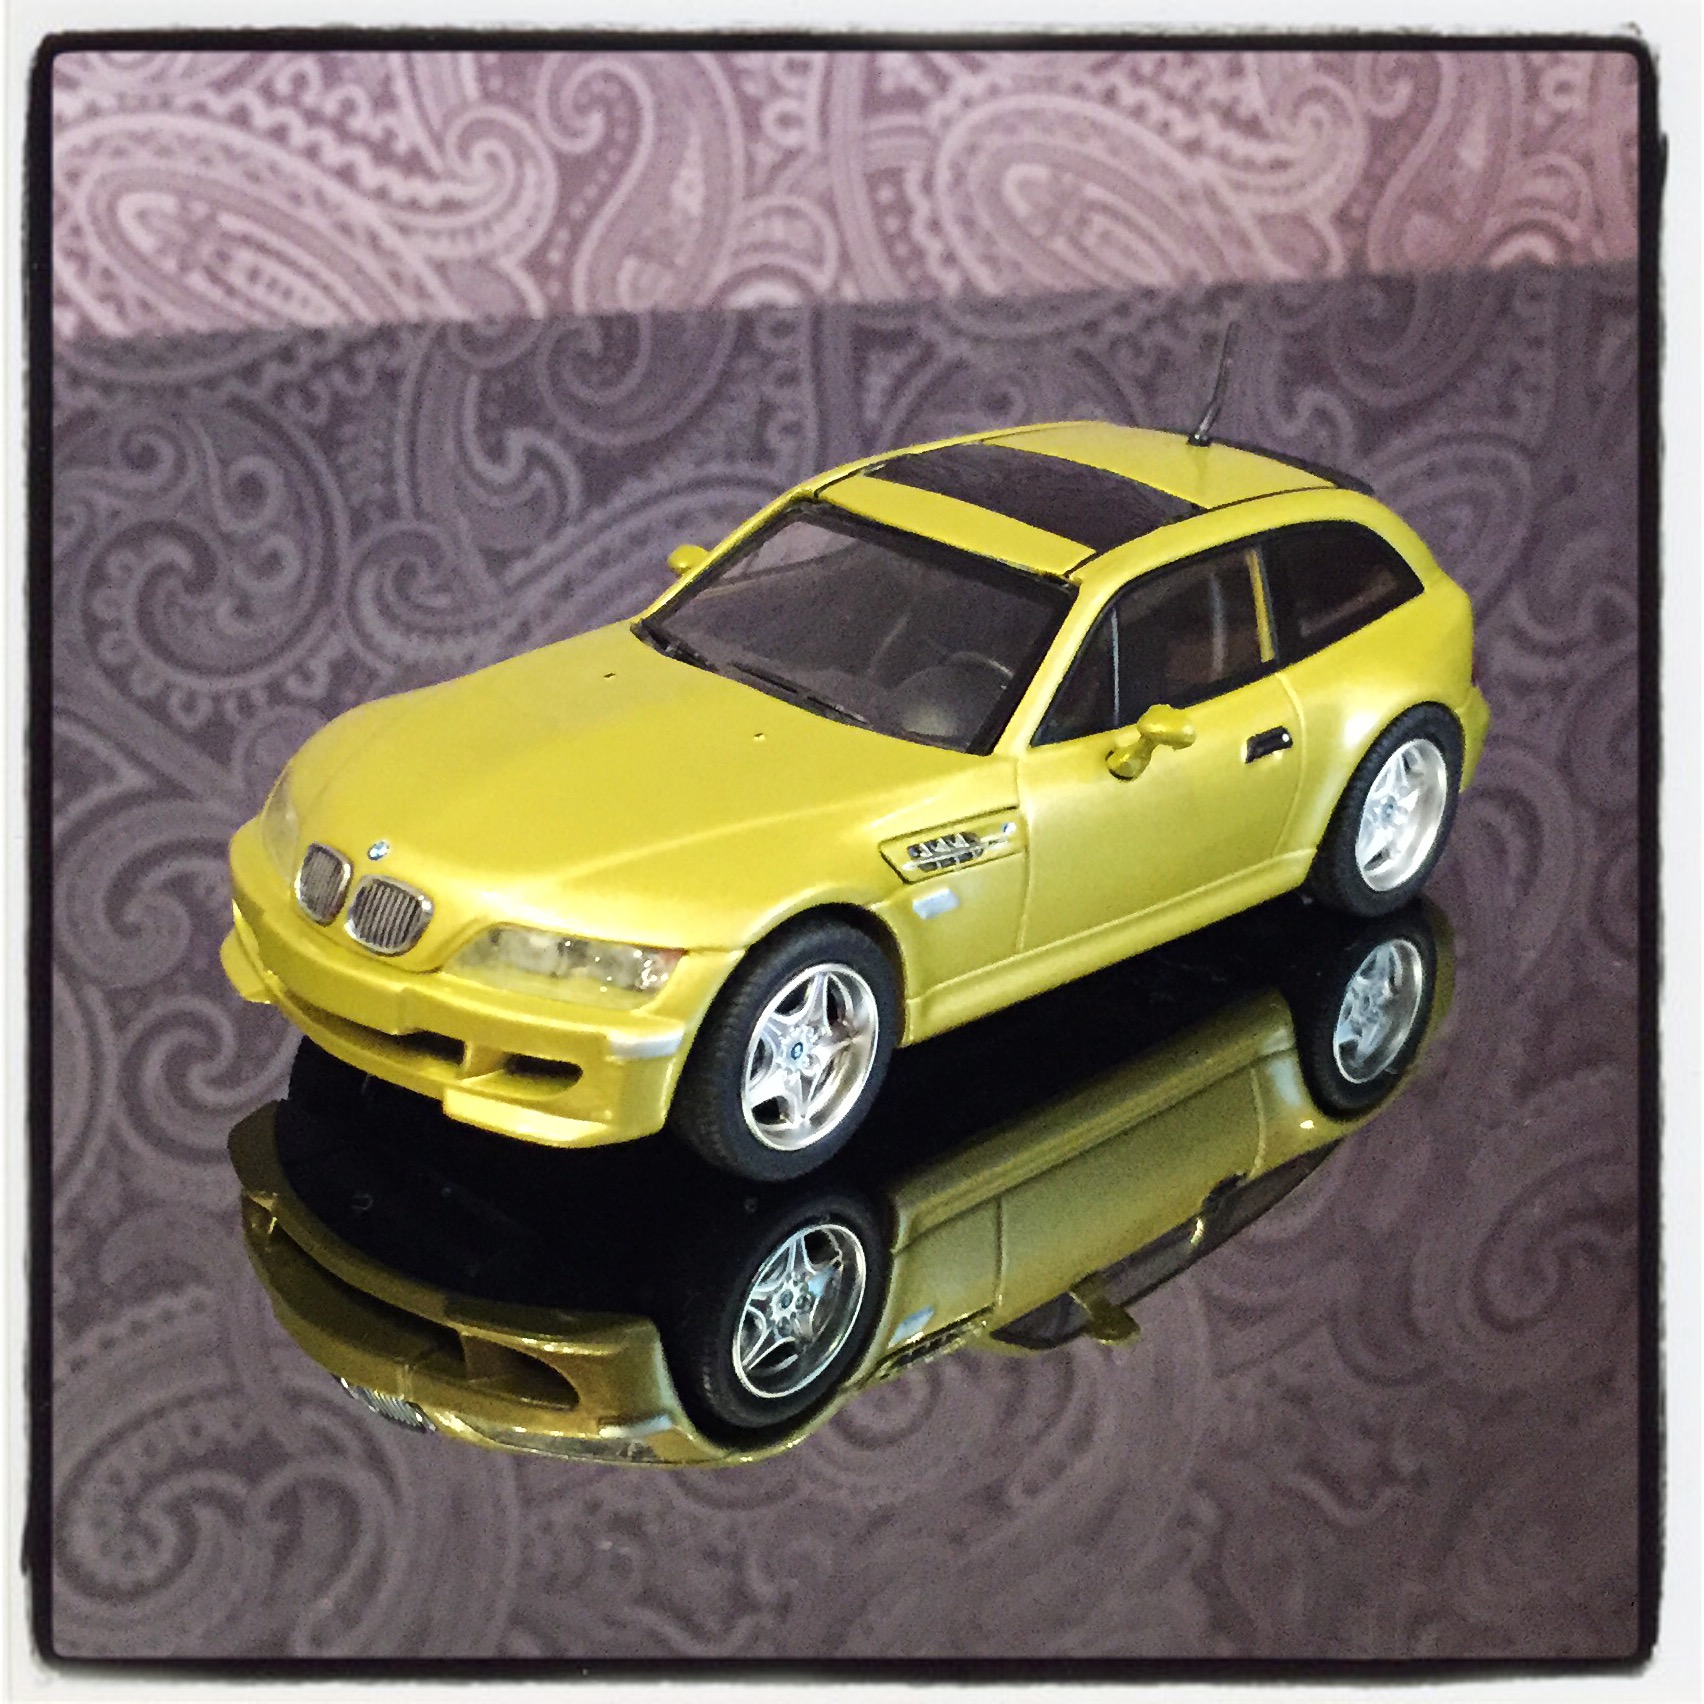 BMW M coupe (E36) 2001, yellow, le 1 of 1,008pcs. (Minichamps)